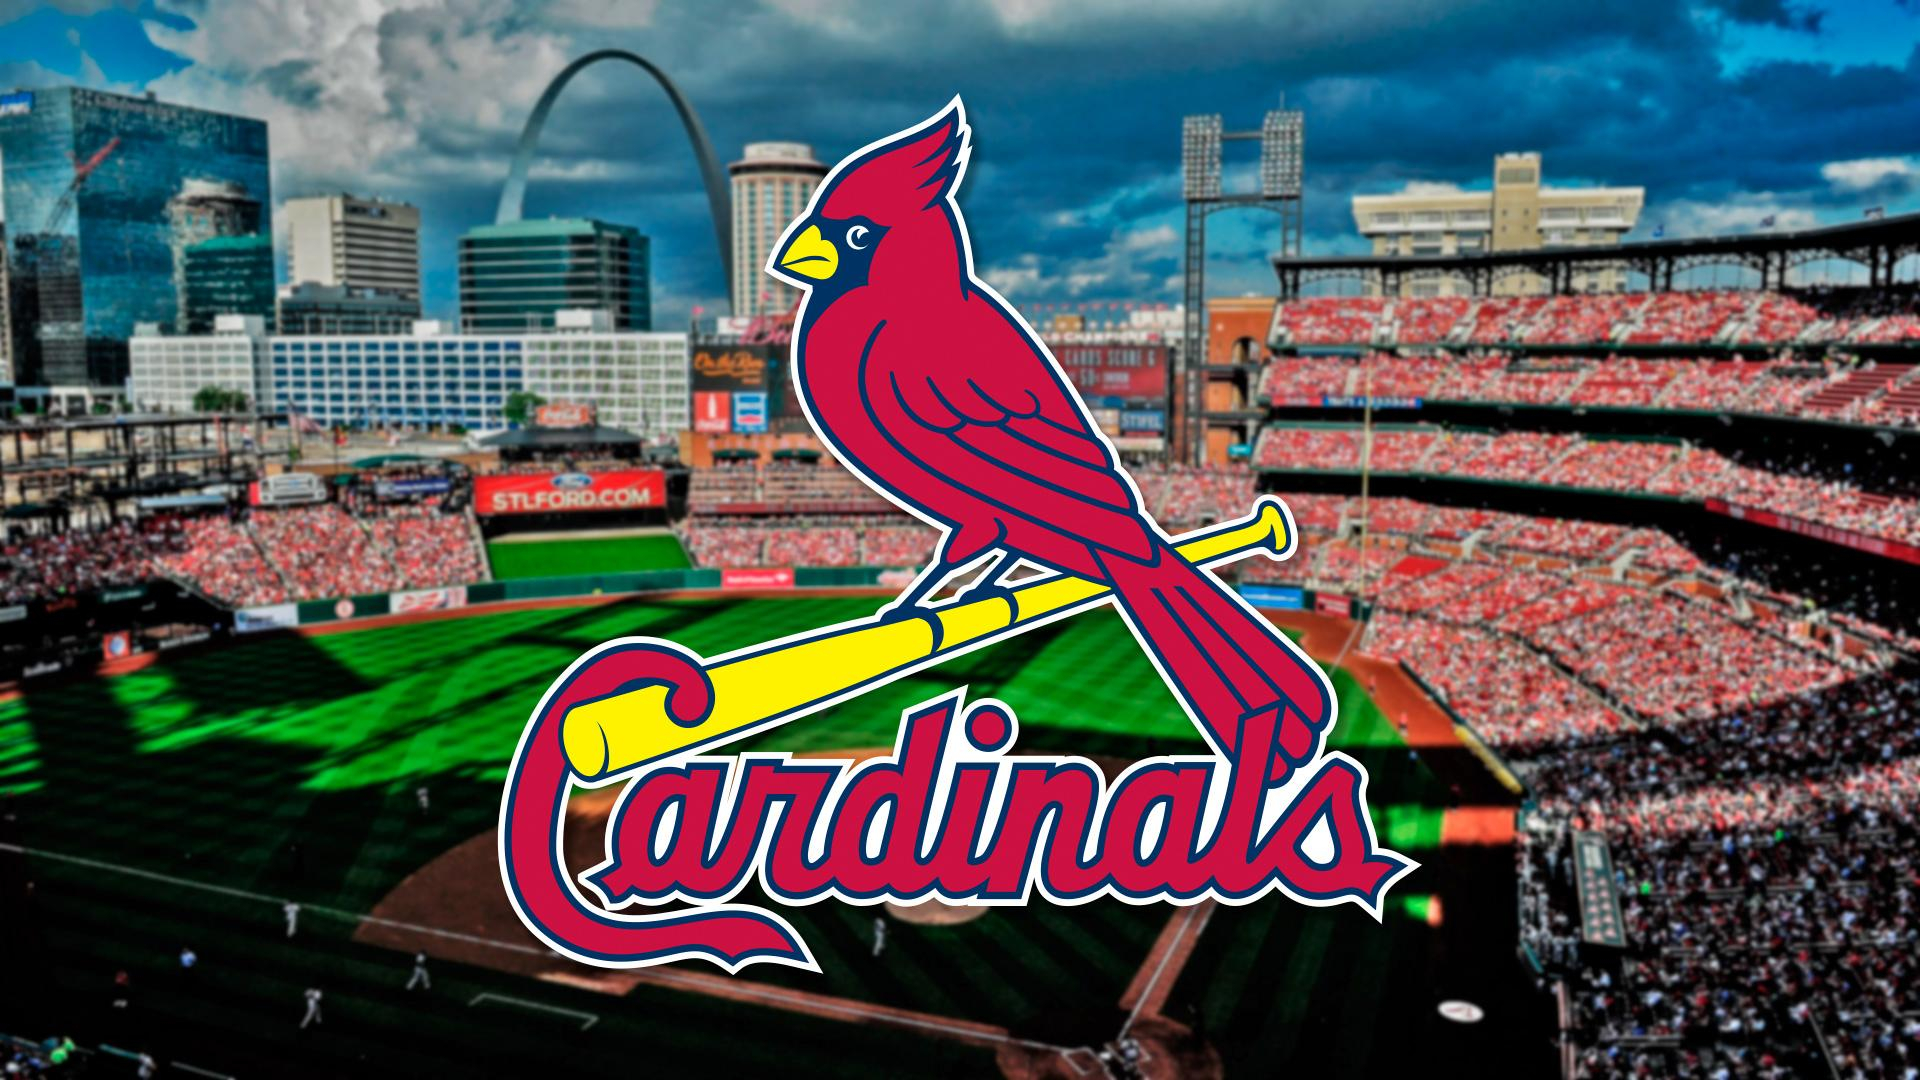 1920x1080 Saint Louis Cardinals Wallpapers Top Free Saint Louis Cardinals Backgrounds